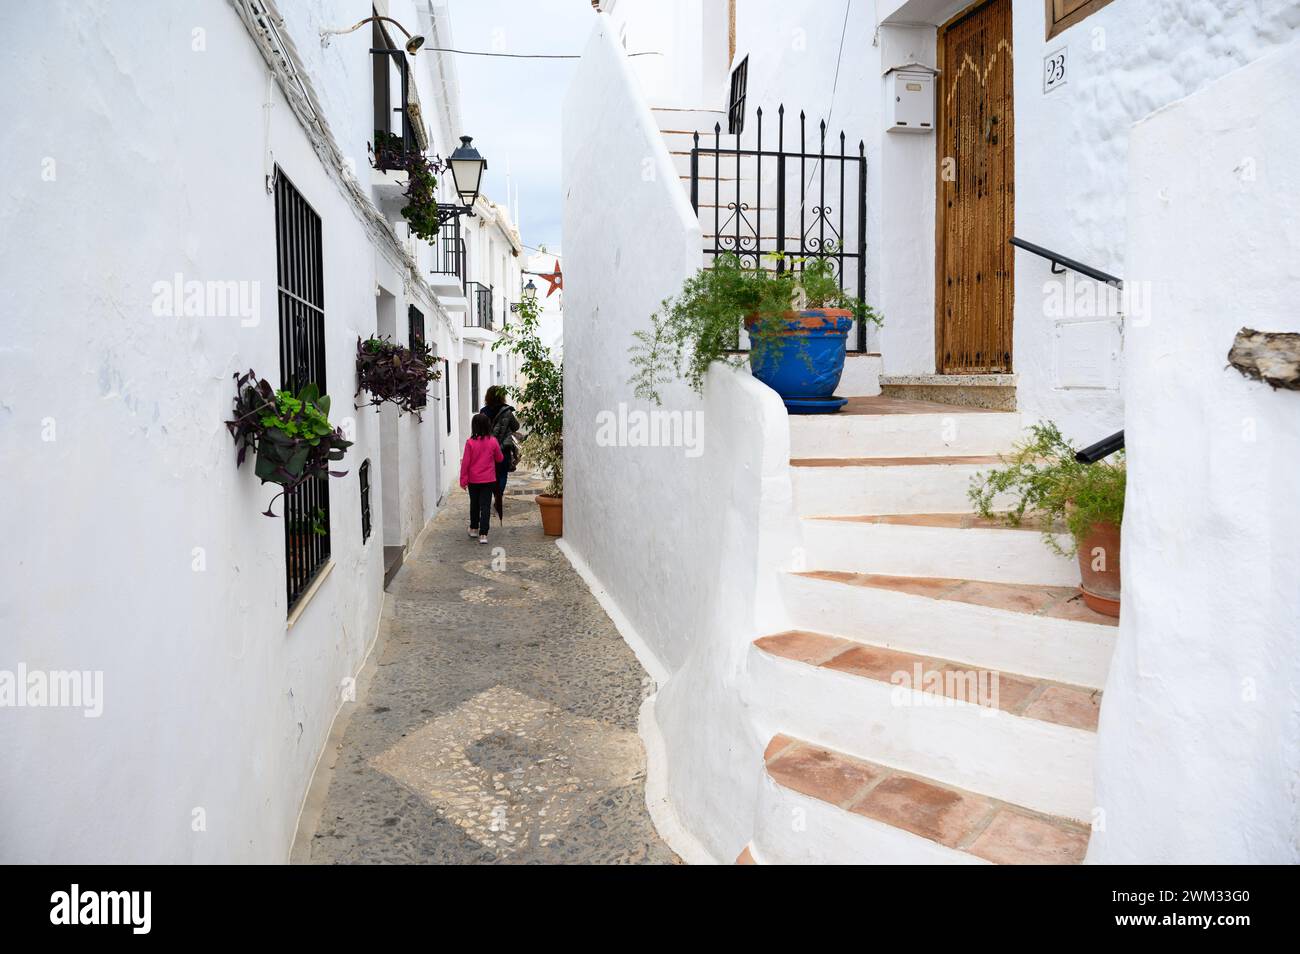 Escaliers menant aux maisons blanches andalouses typiques dans le joli village de Frigiliana, Malaga, Espagne. Banque D'Images